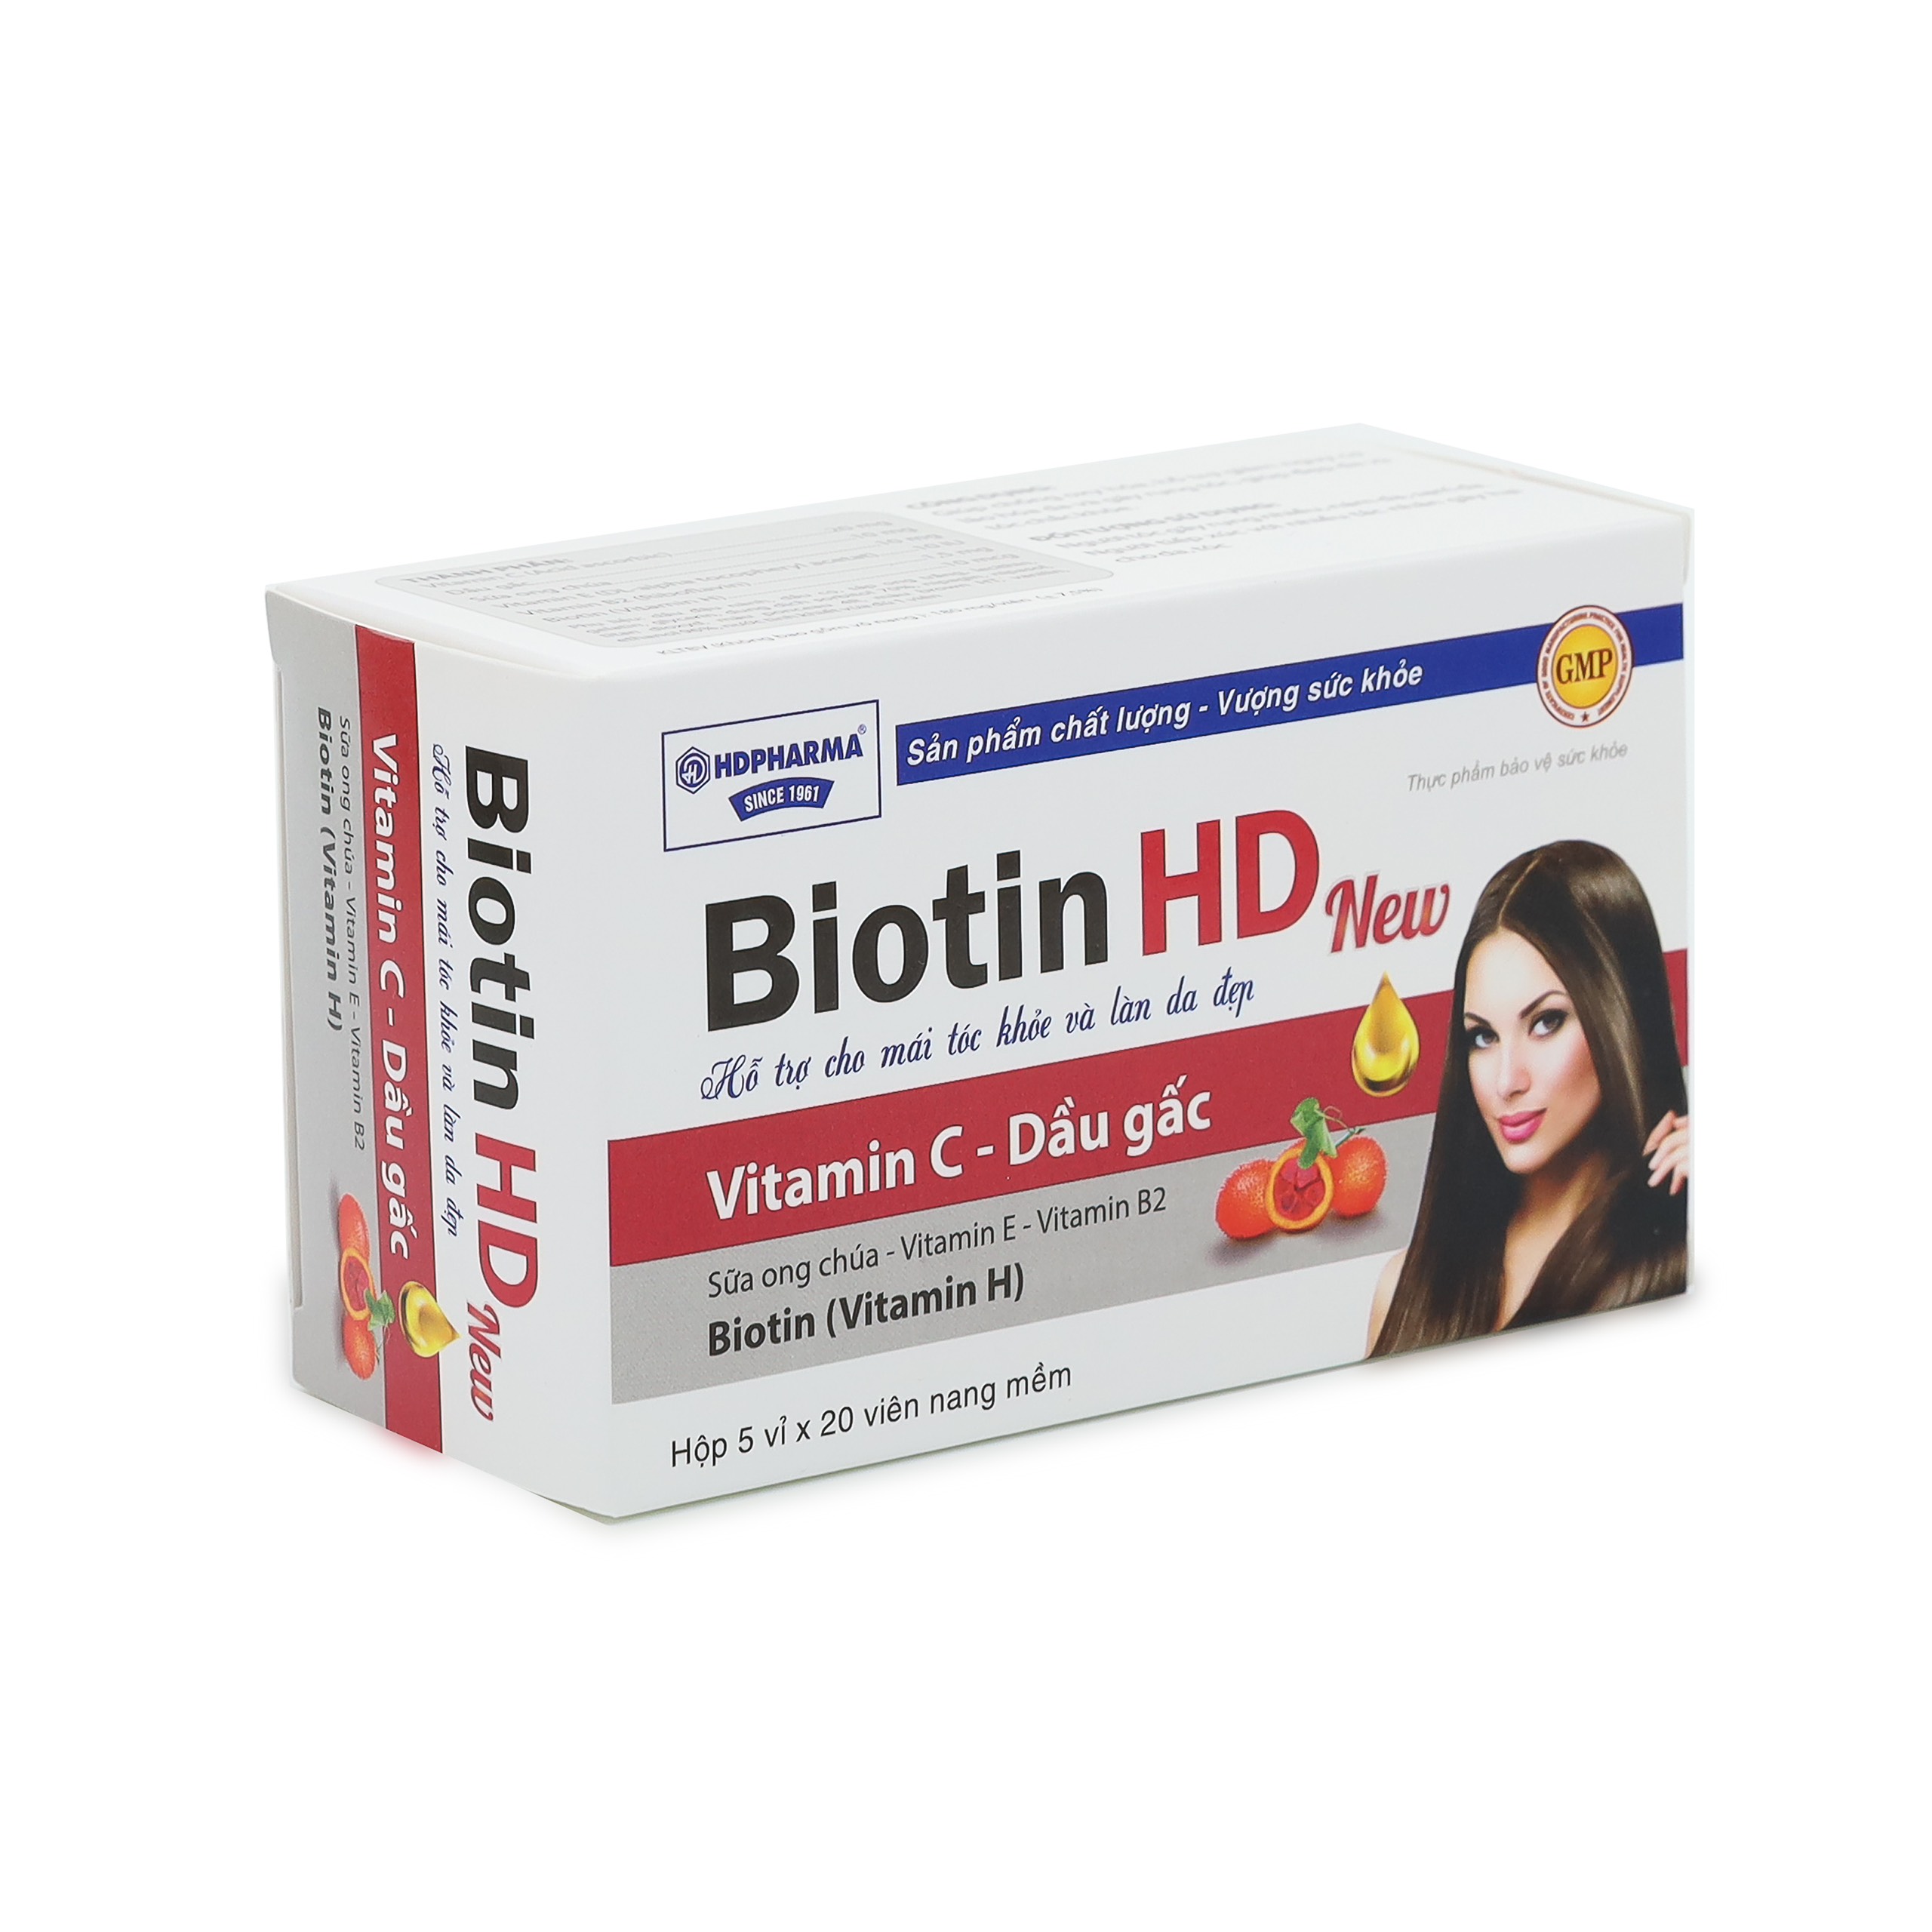 Viên uống bổ sung Biotin HD New Vitamin H - giúp giảm rụng róc, sạm da